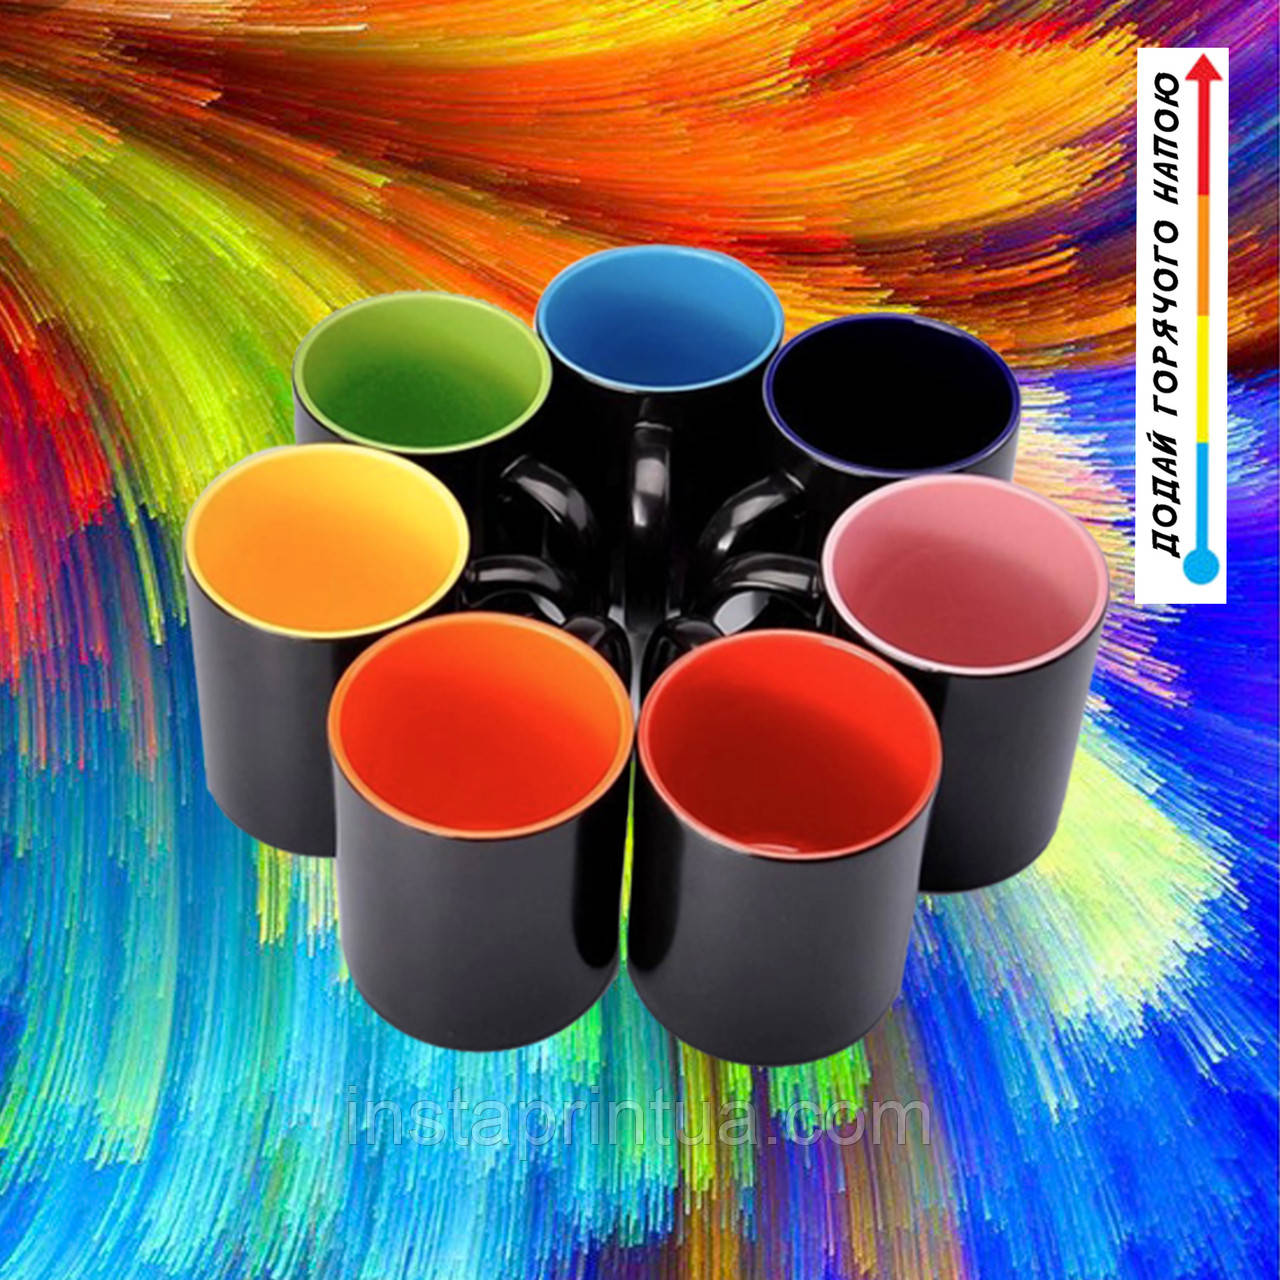 Чашка-хамелеон + фото кольорова всередині — Макет (оформлення) — БЕЗПЛАТНО. Друк на чашках